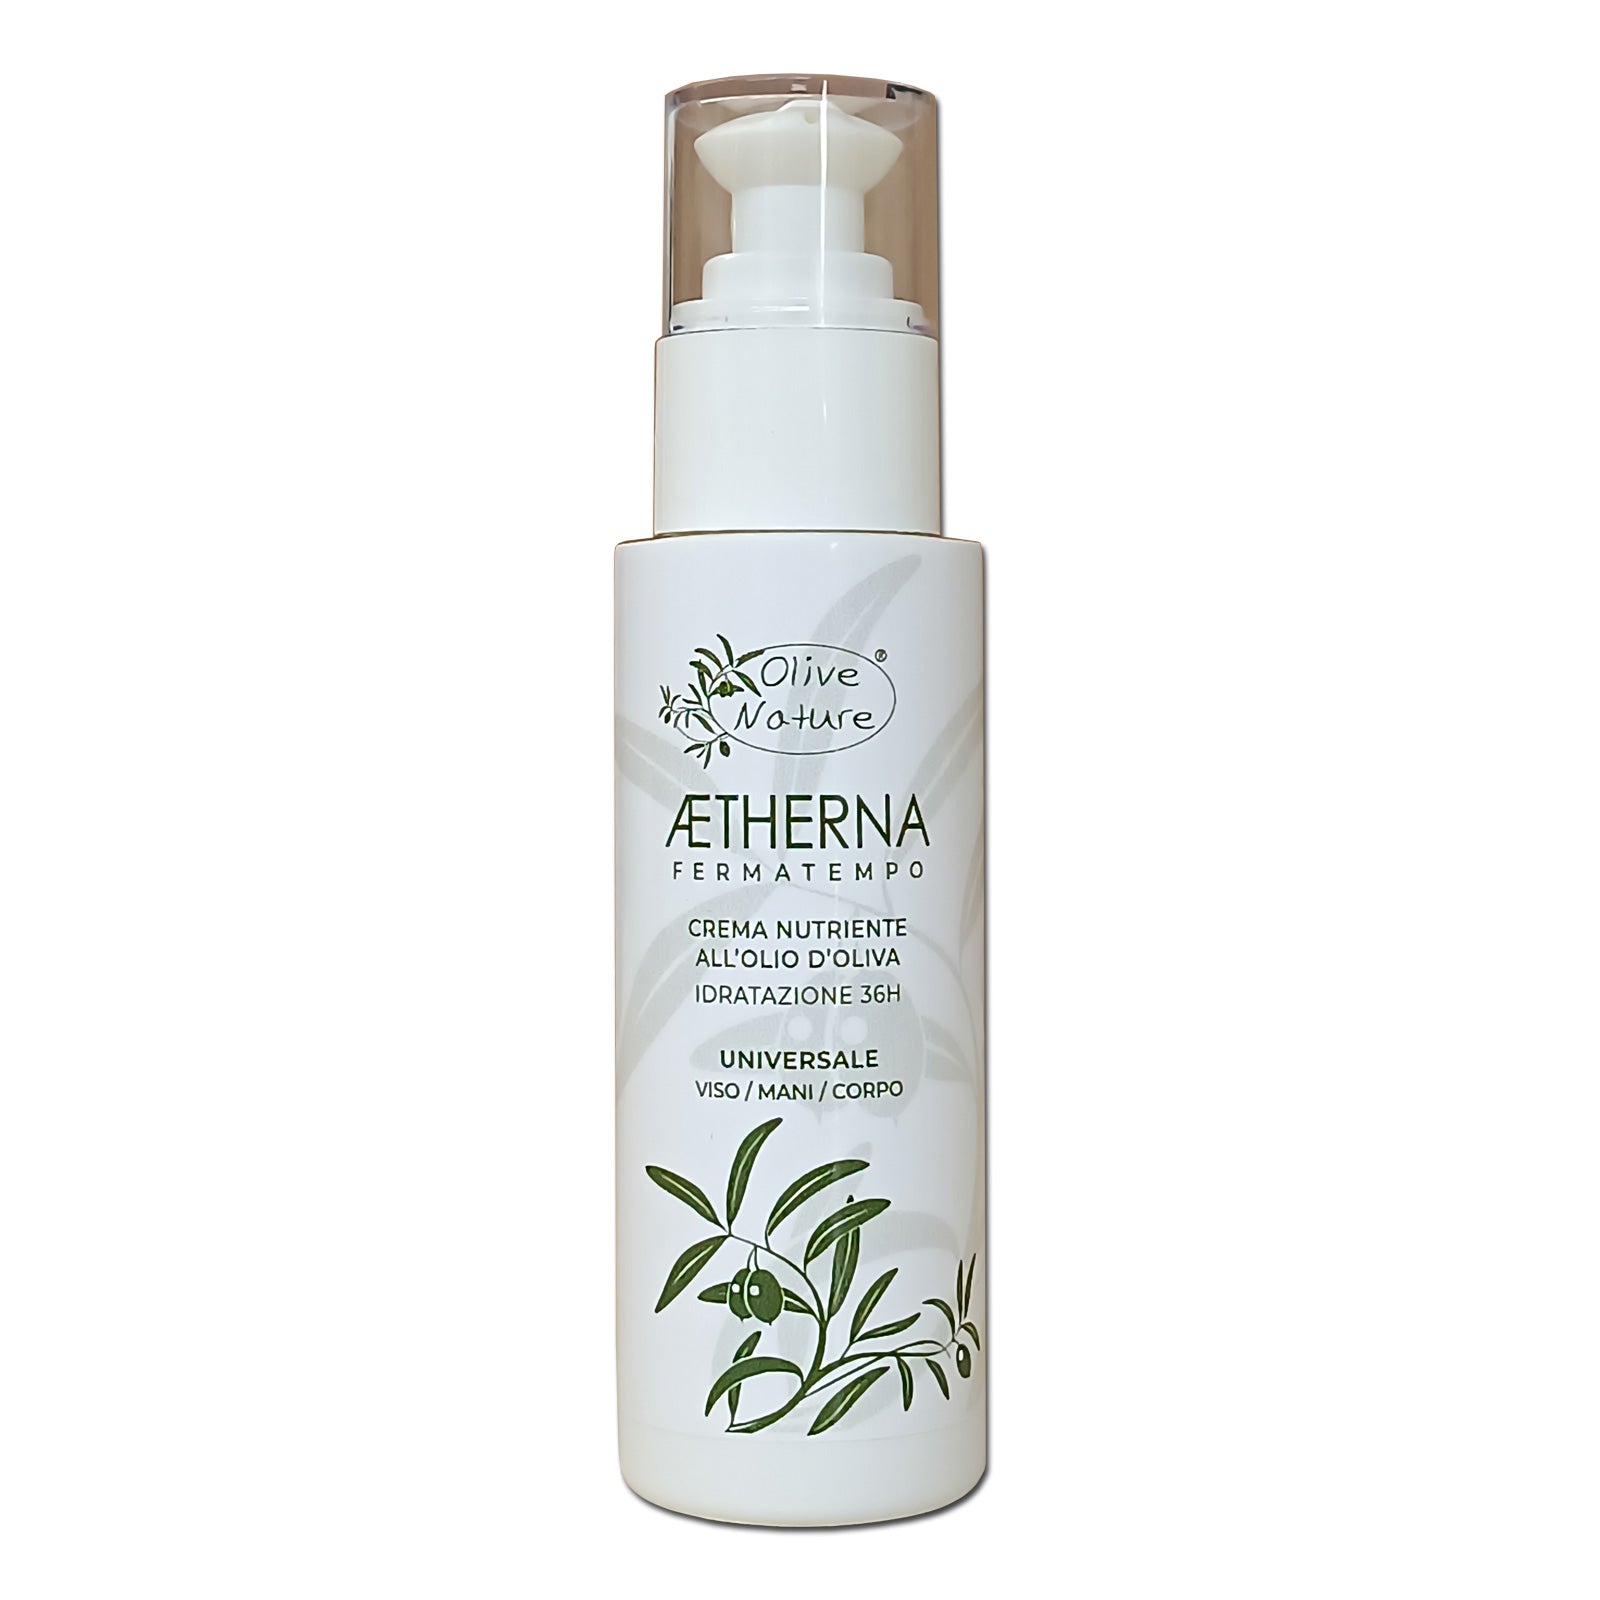 AETHERNA - Crema nutriente universale viso/mani/corpo all'olio extravergine d'oliva - Dispenser da 125 ml